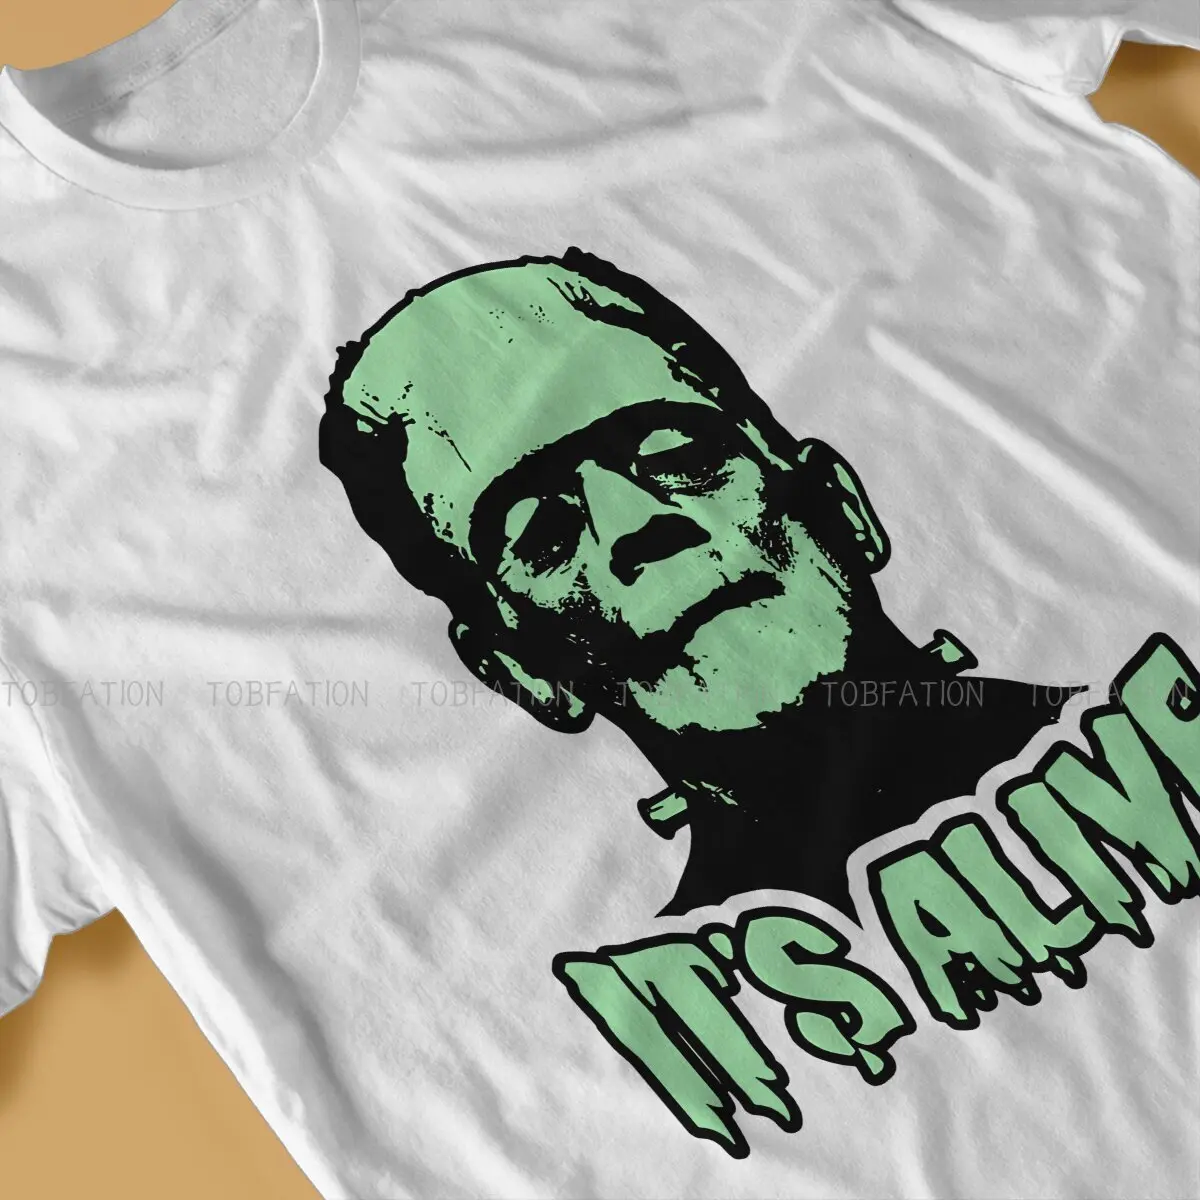 Frankenstein TShirt për Burrat Humor Humor të Lirë Sweatshirts T Shirt me Cilësi të Lartë Dizajn të Ri të Lirshme . ' - ' . 3